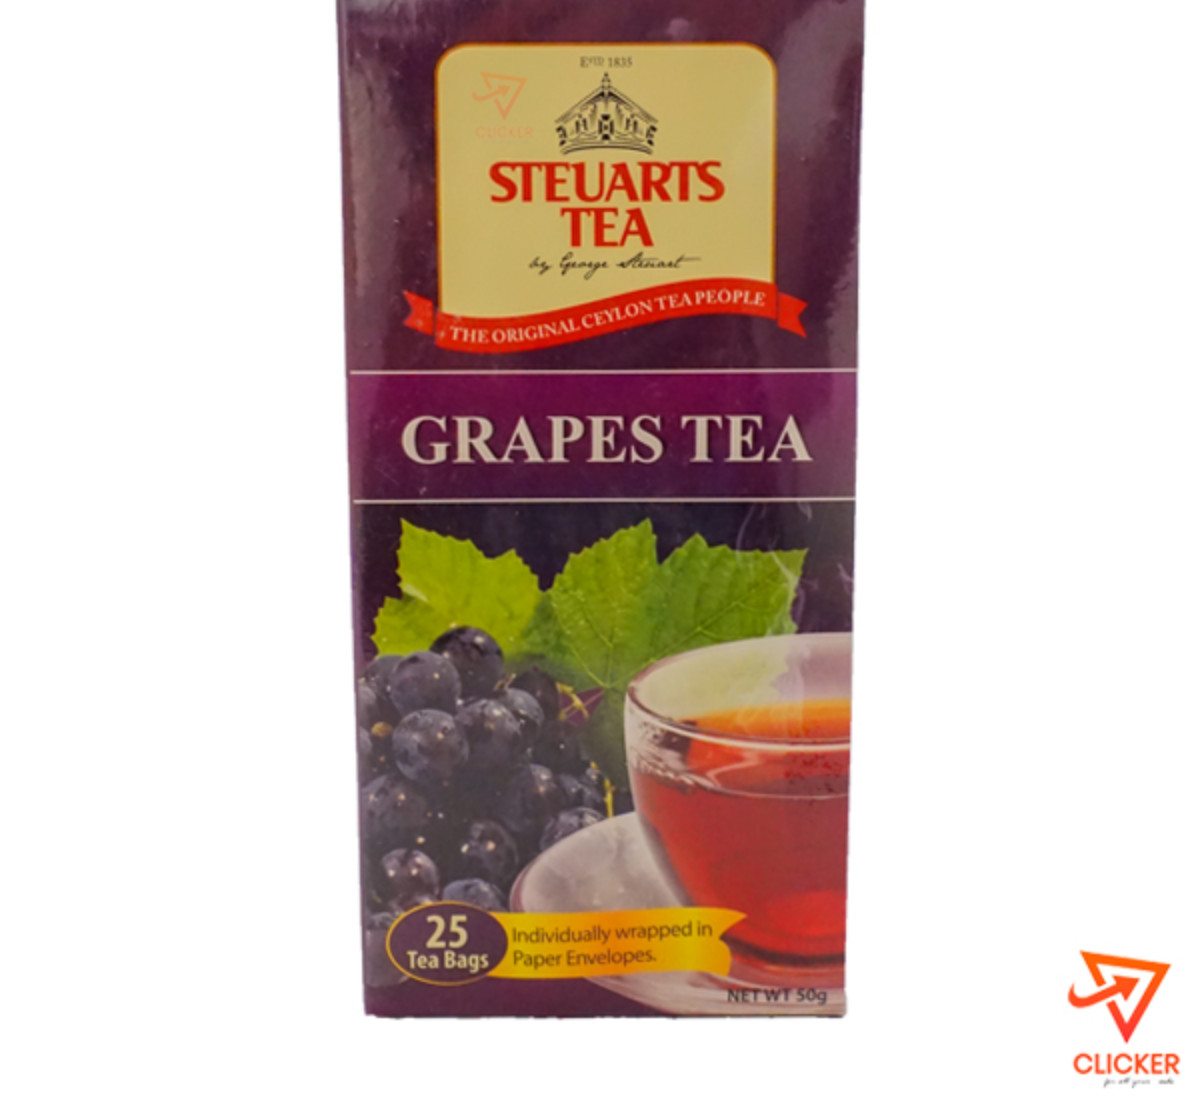 Clicker product 50g GEORGE STEURARTS tea grapes tea (25 tea bags) 927